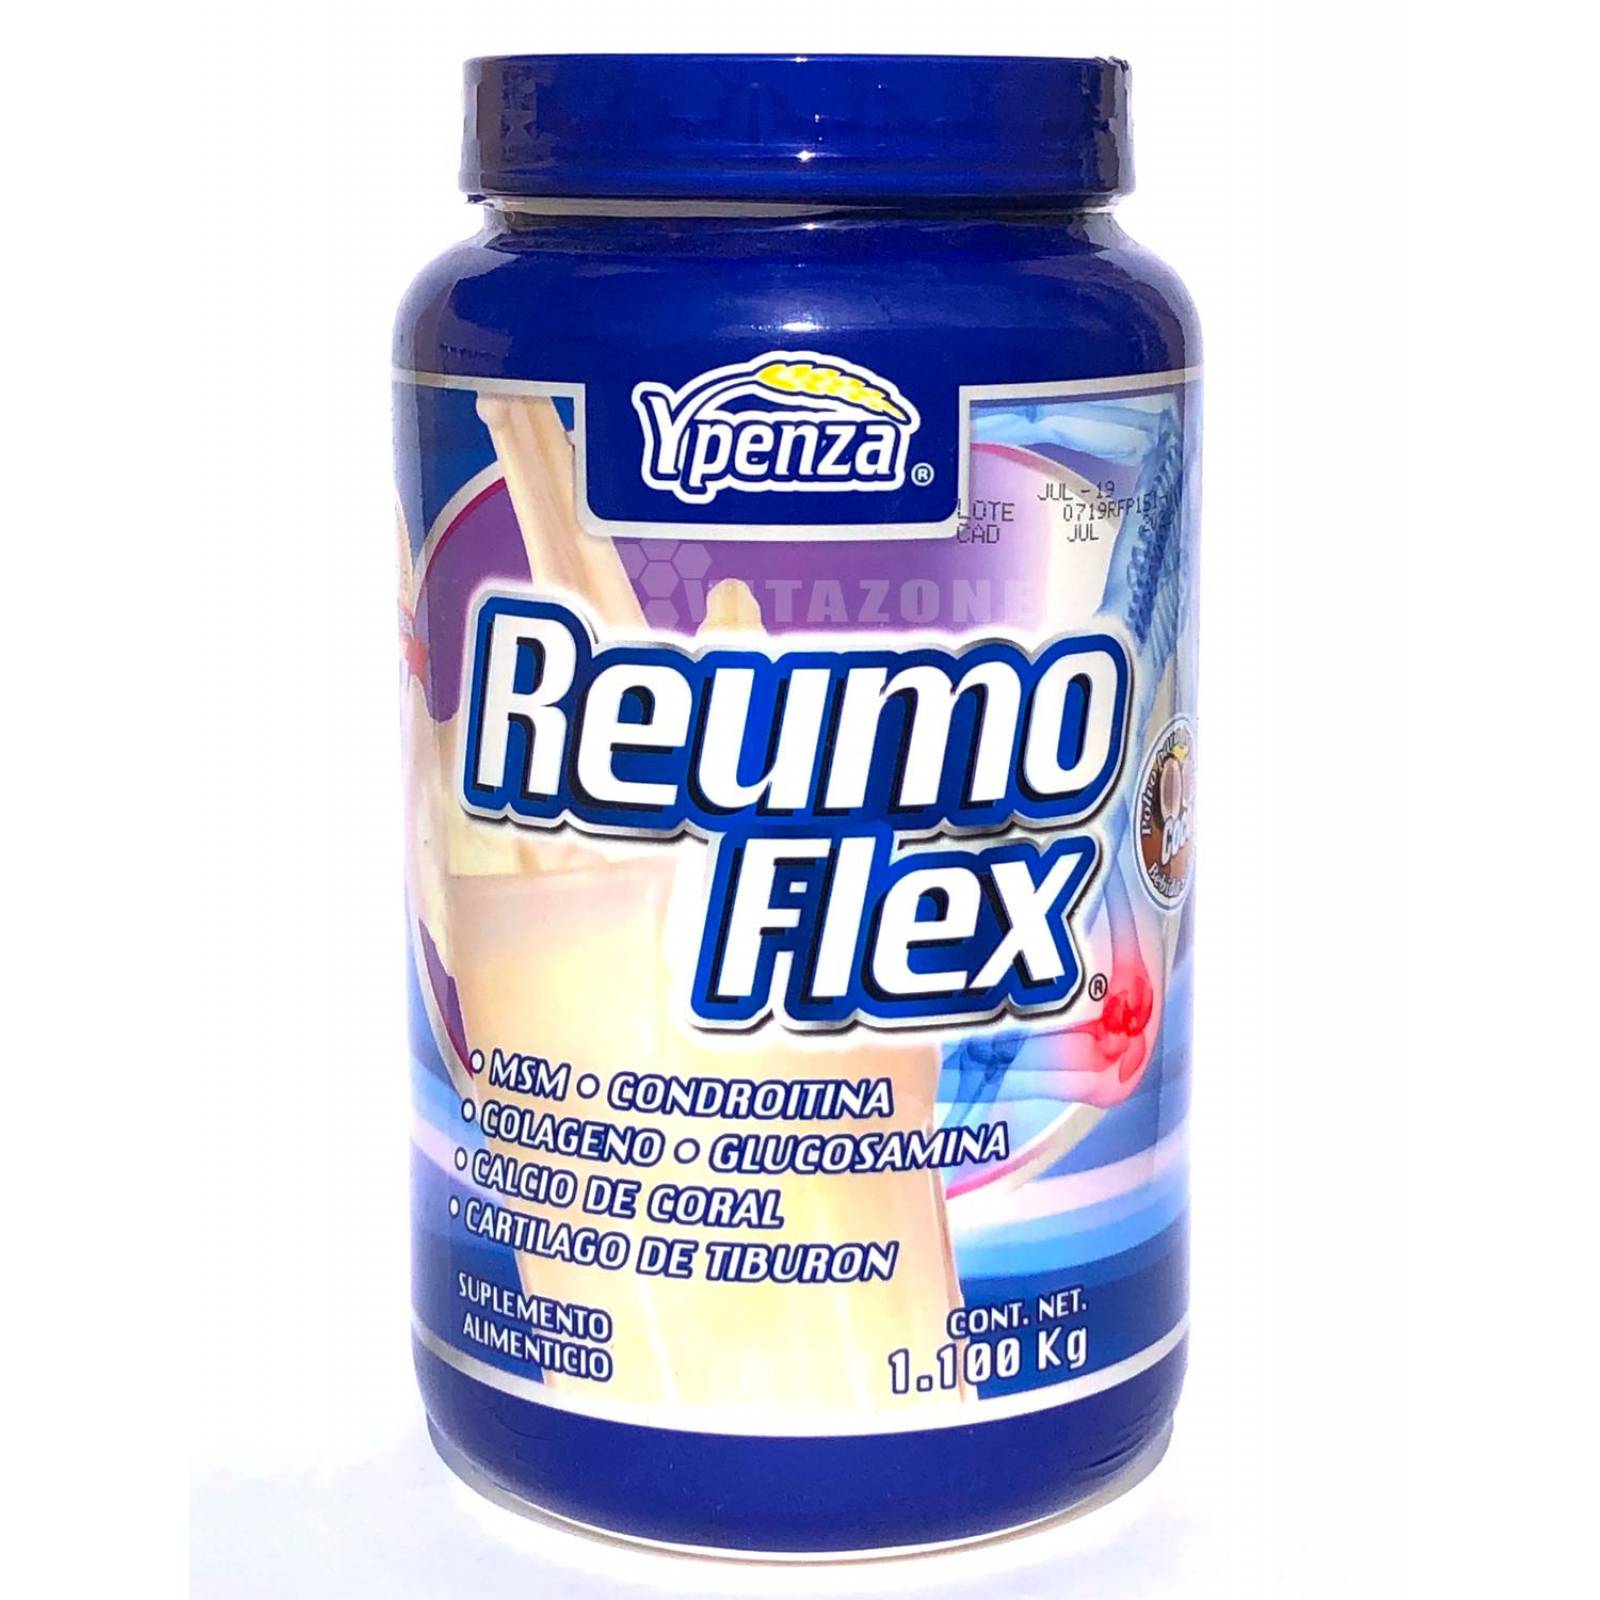 Reumoflex Sabor Coco 1.1 Kg Ypenza. (3 Botes) 